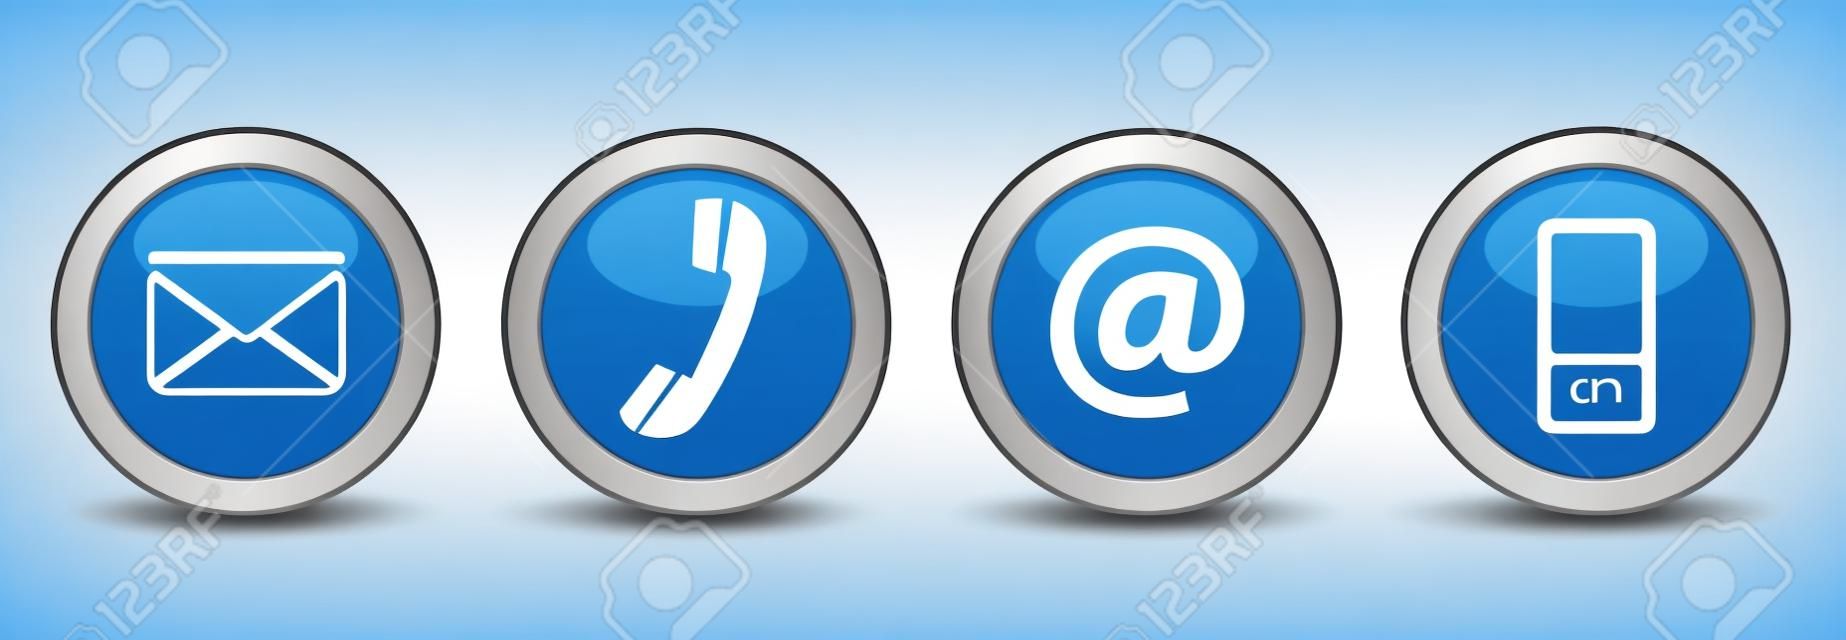 Póngase en contacto con nosotros botones web conjunto con el correo electrónico, en, teléfono y móvil iconos en azul insignia de plata del vector EPS 10 ilustración aislado sobre fondo blanco.